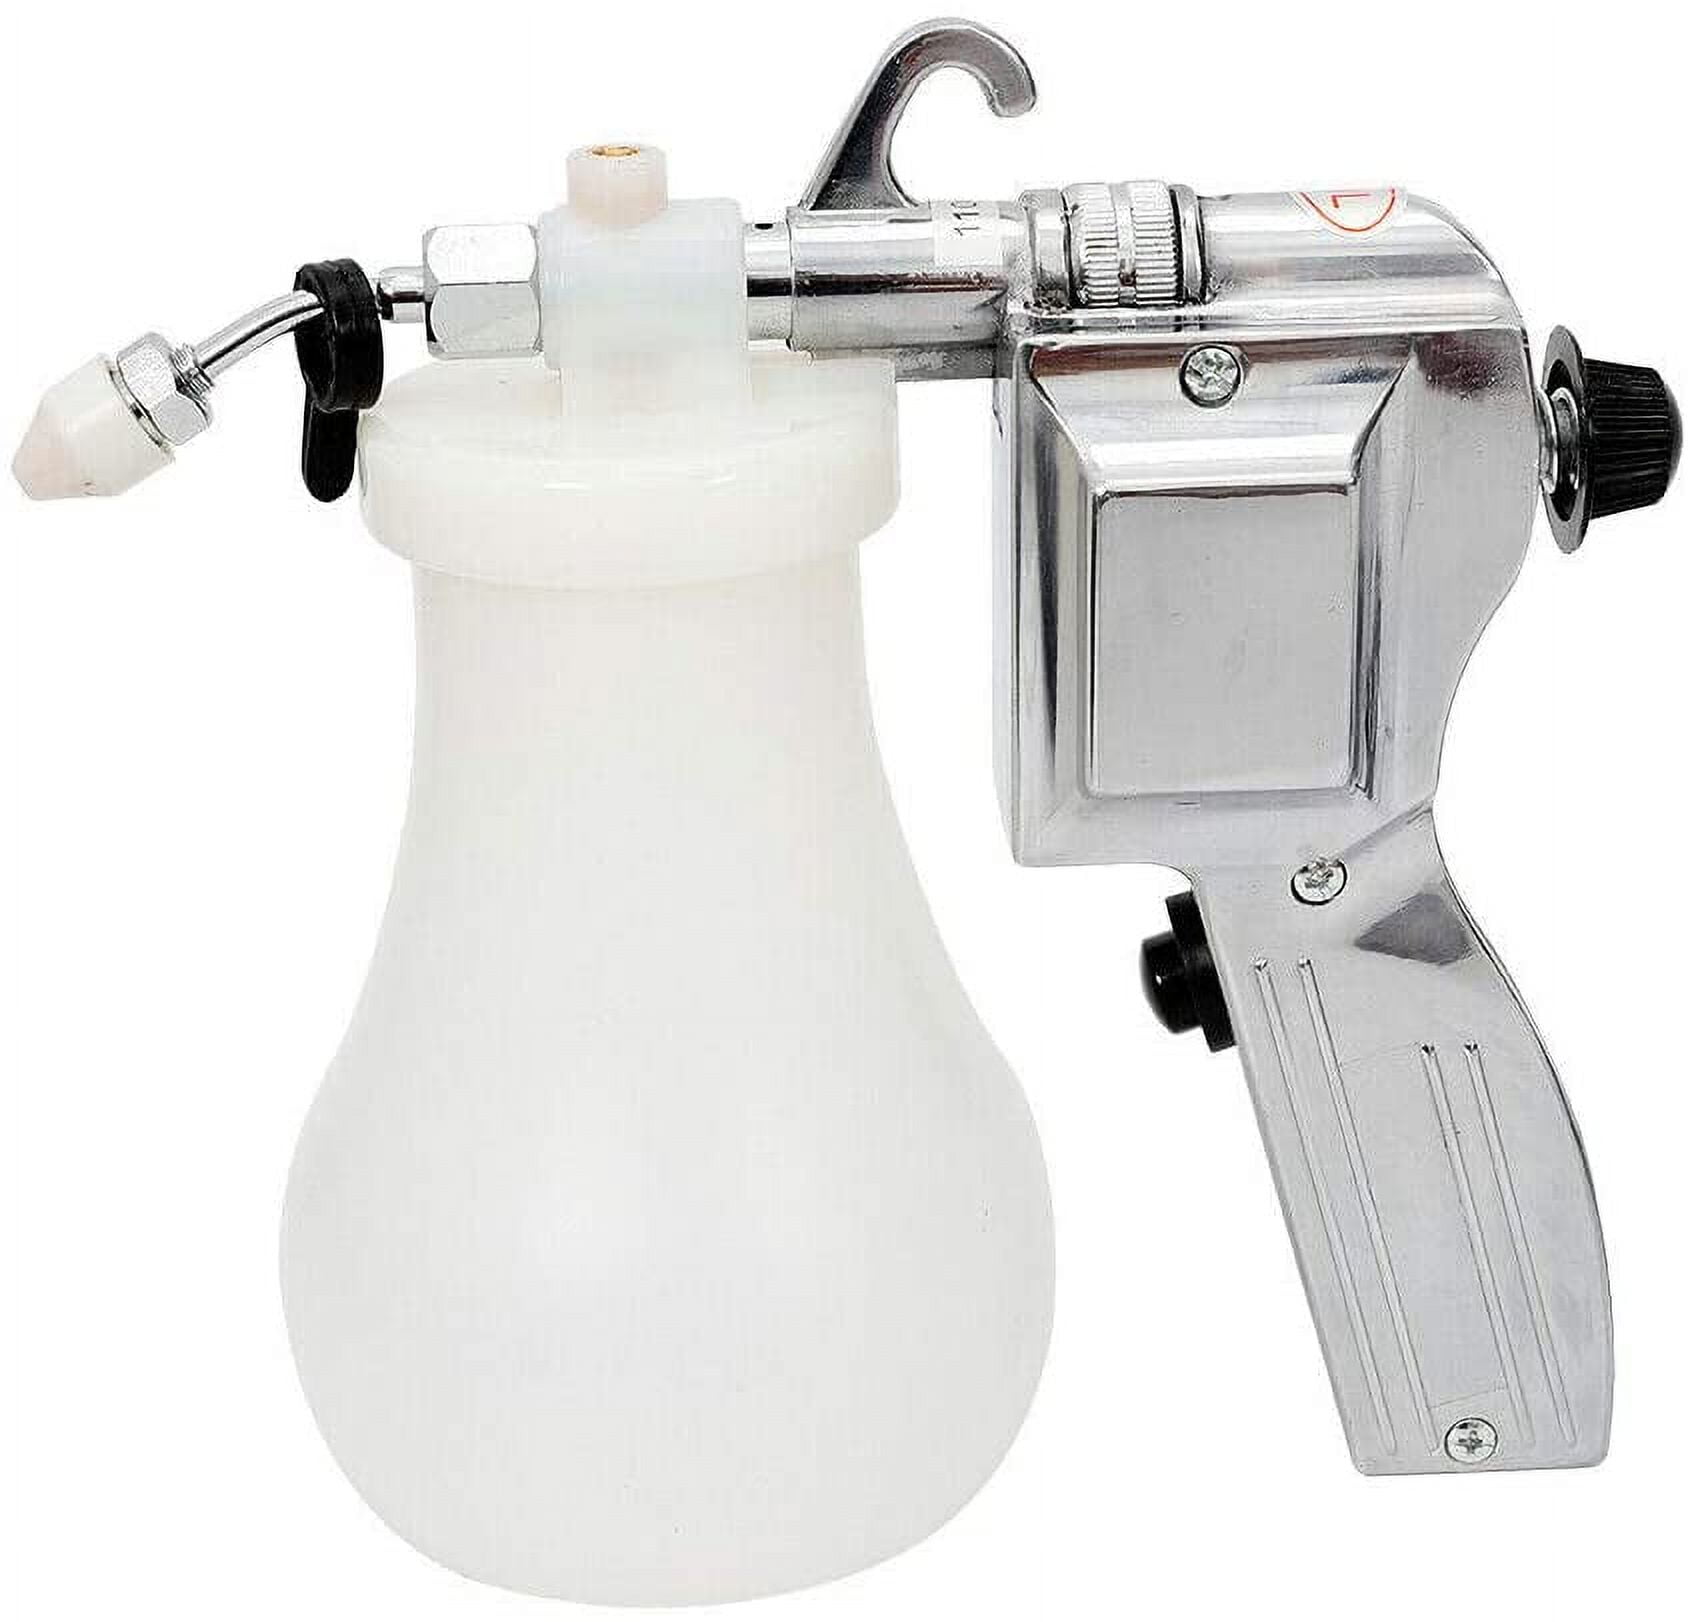 JET 505596 17 pc Spray Gun Cleaning Kit